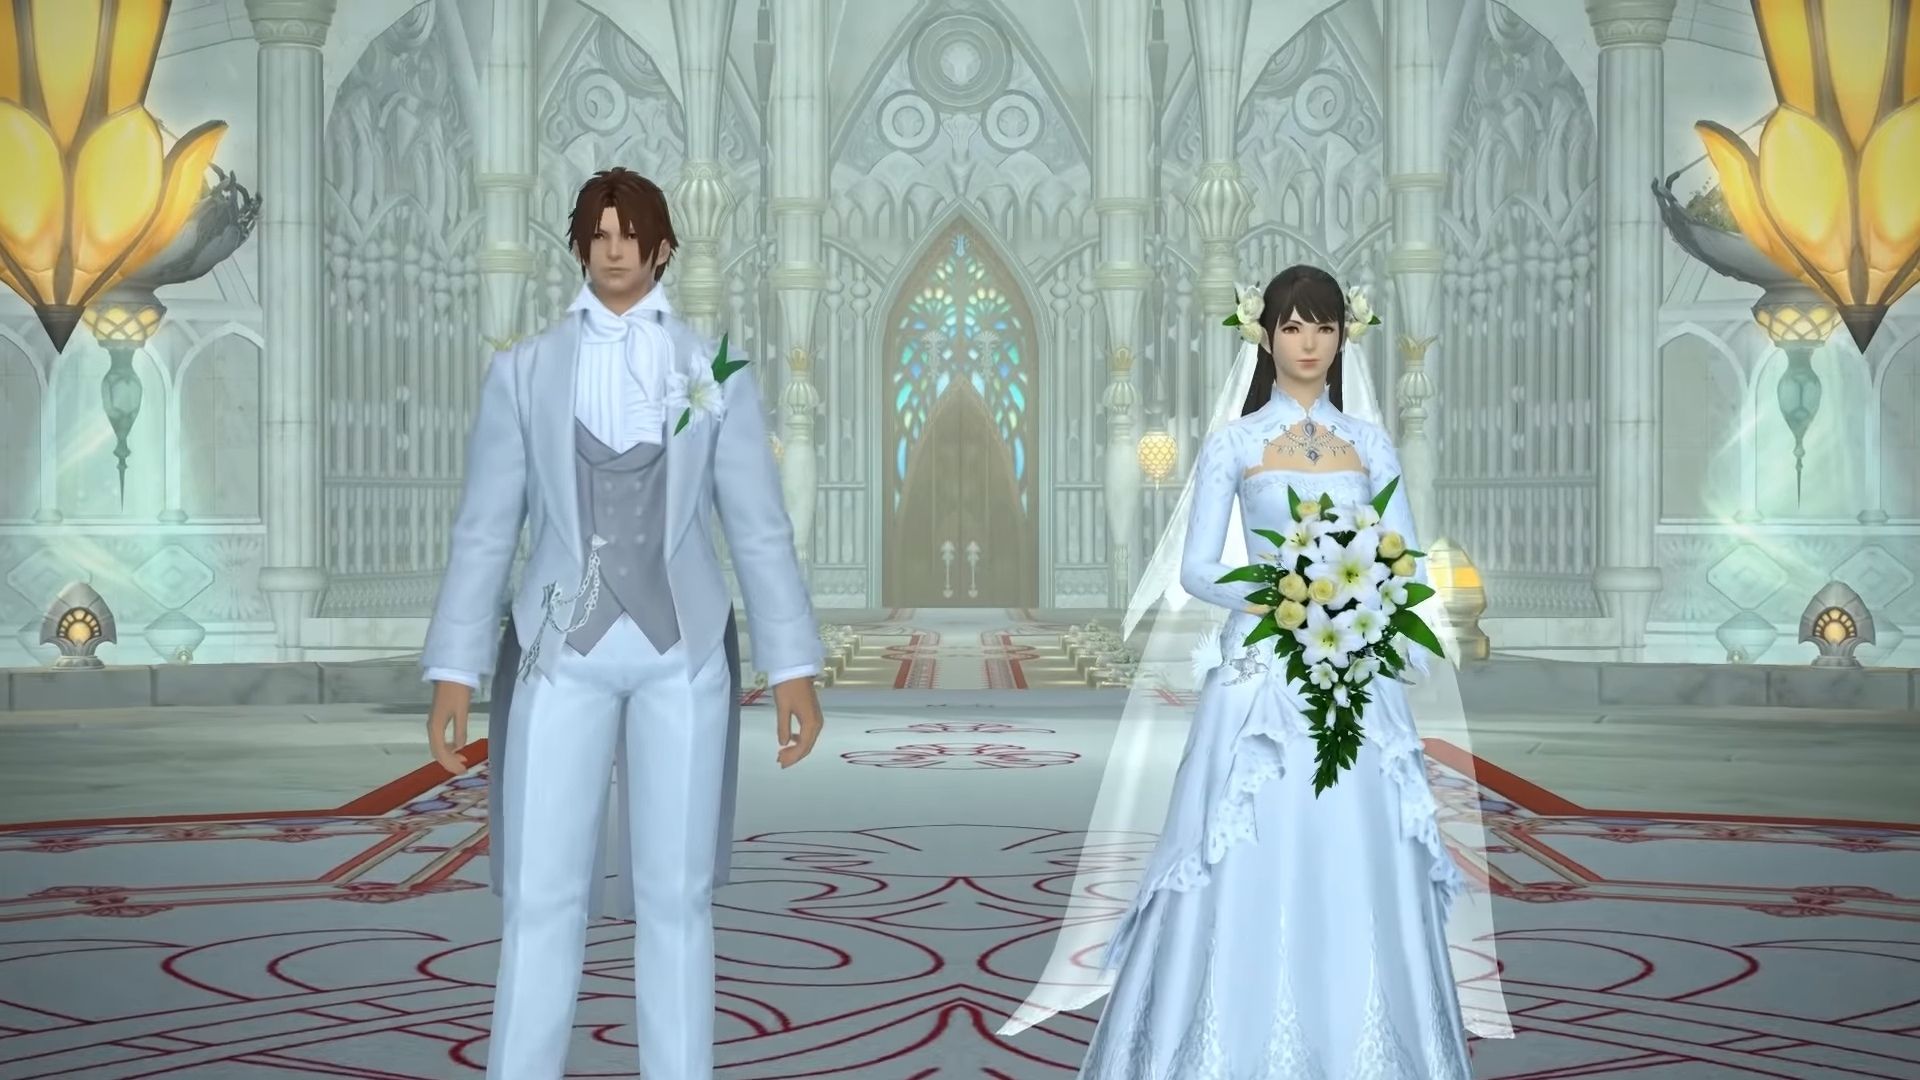 Ролевые игры и браки по расчету — как проходят свадьбы в MMORPG